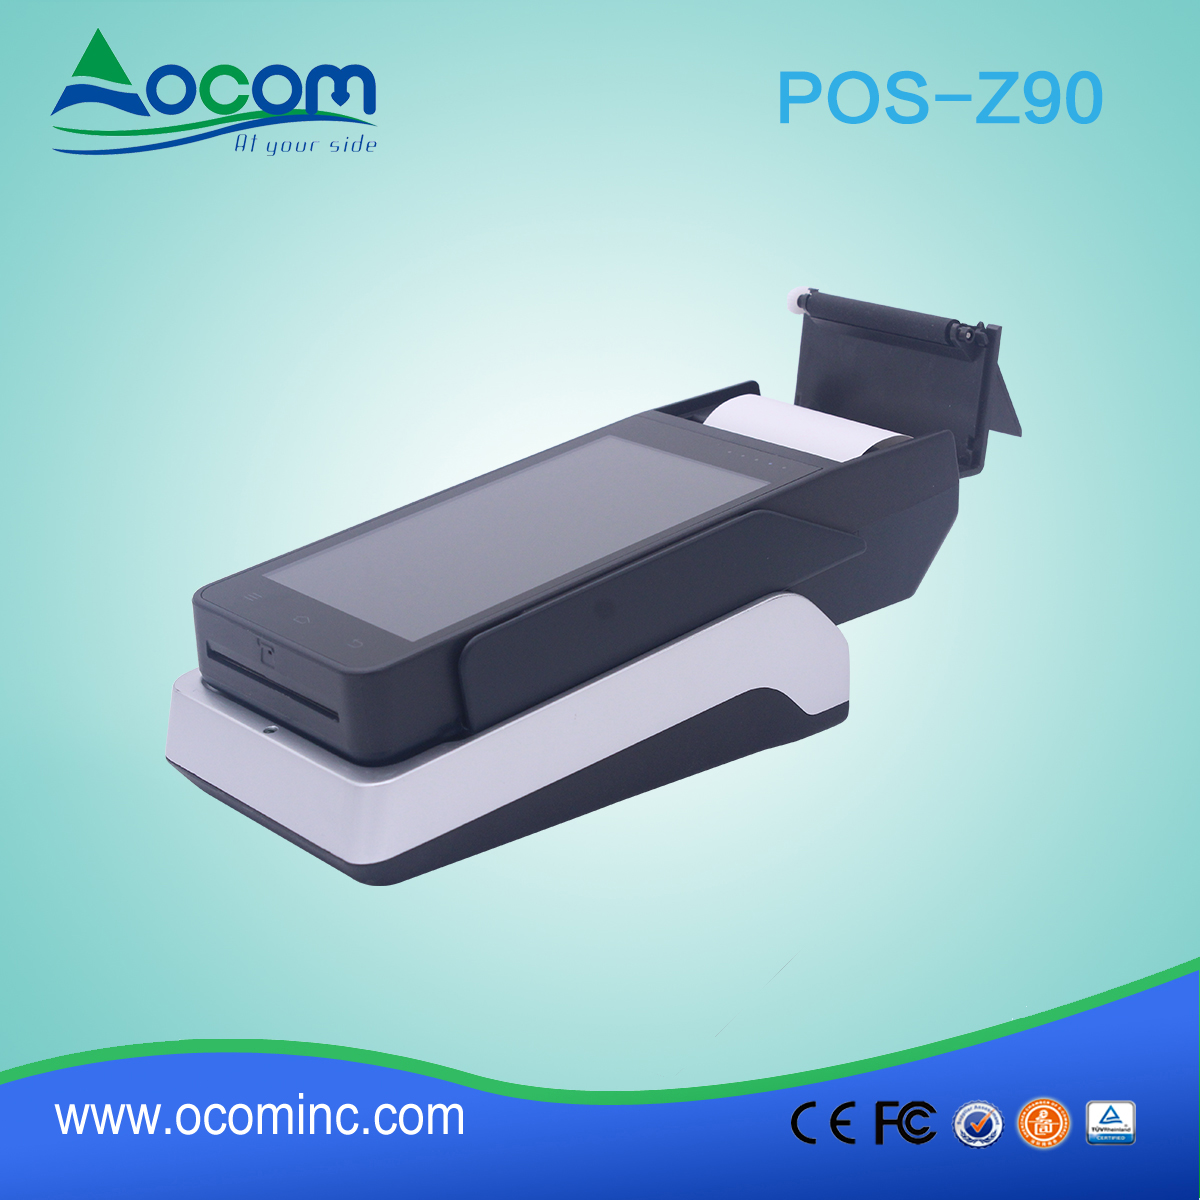 OCOM POS -Z90 terminal Android pos portátil todo en uno con impresora y lector nfc